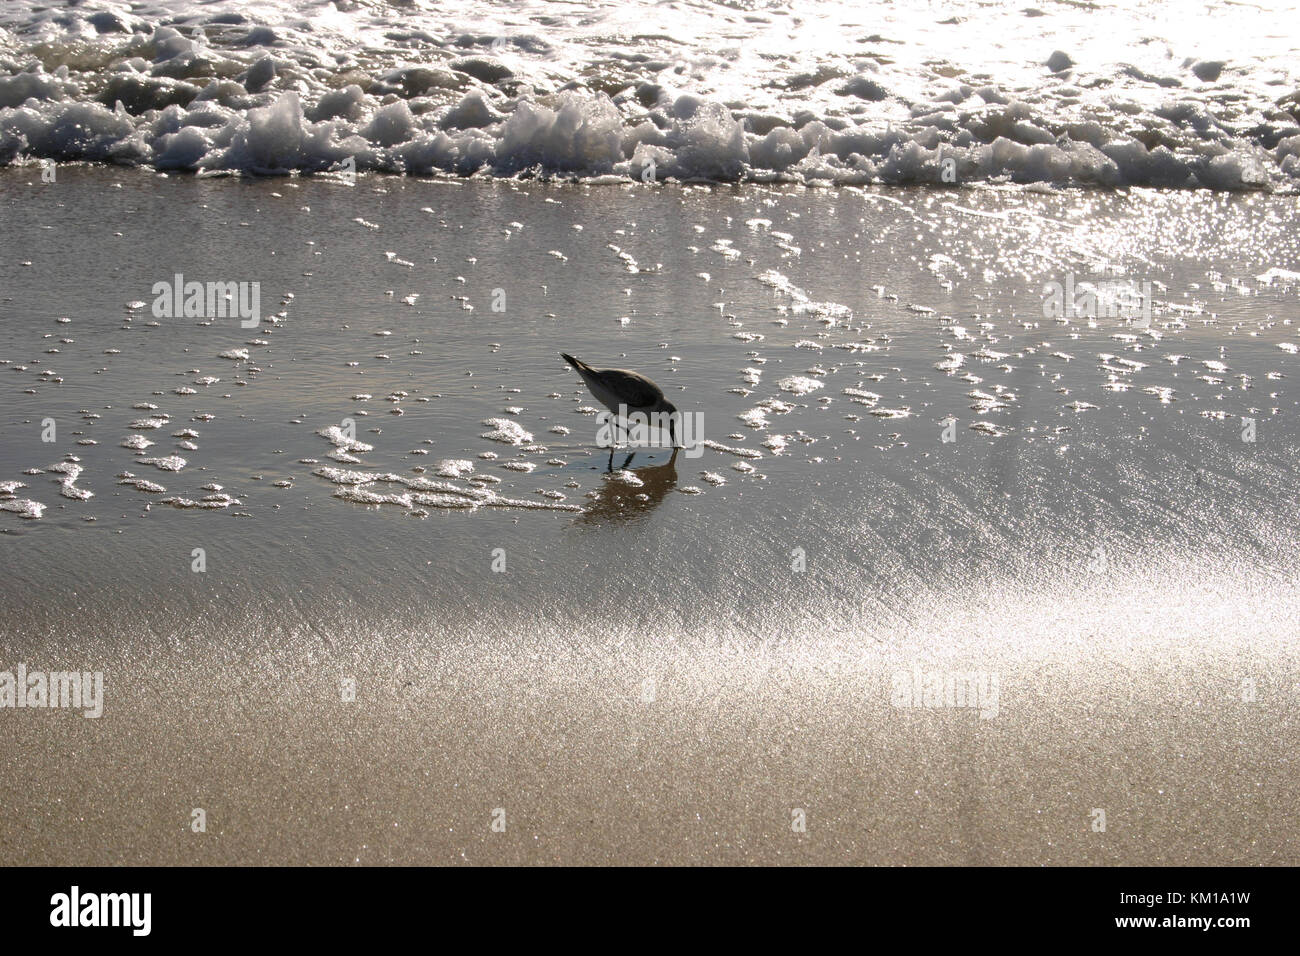 Sandpiper on the beach in California, USA Stock Photo